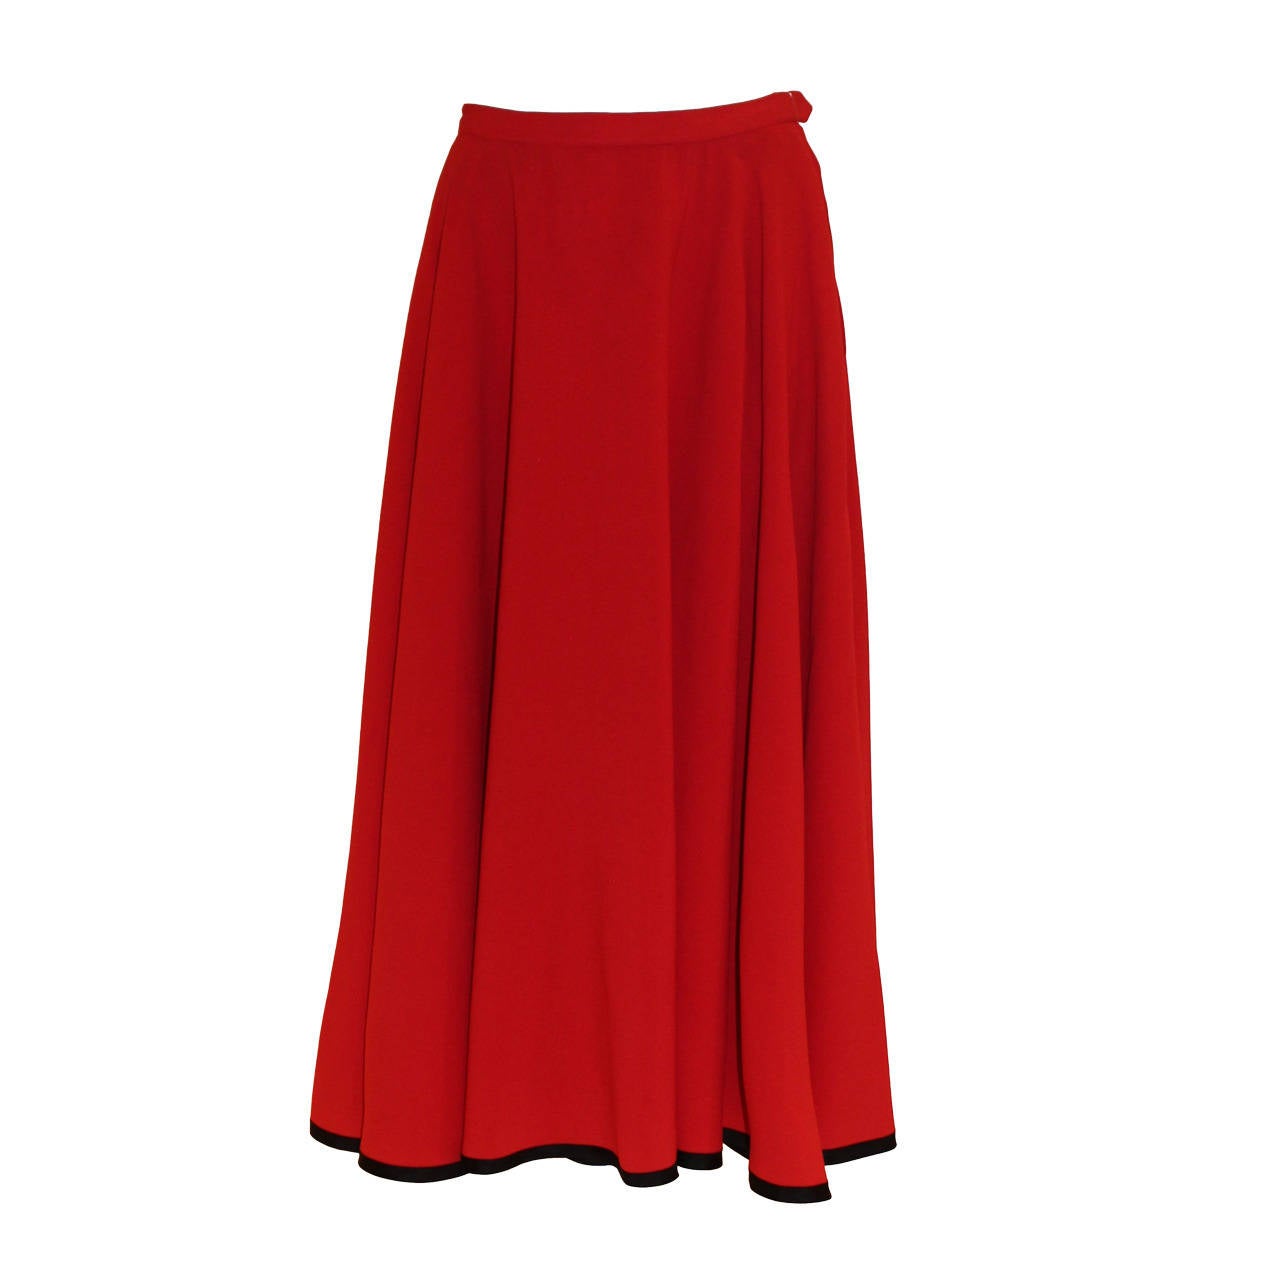 Yves Saint Laurent Rive Gauche Vintage Red Skirt